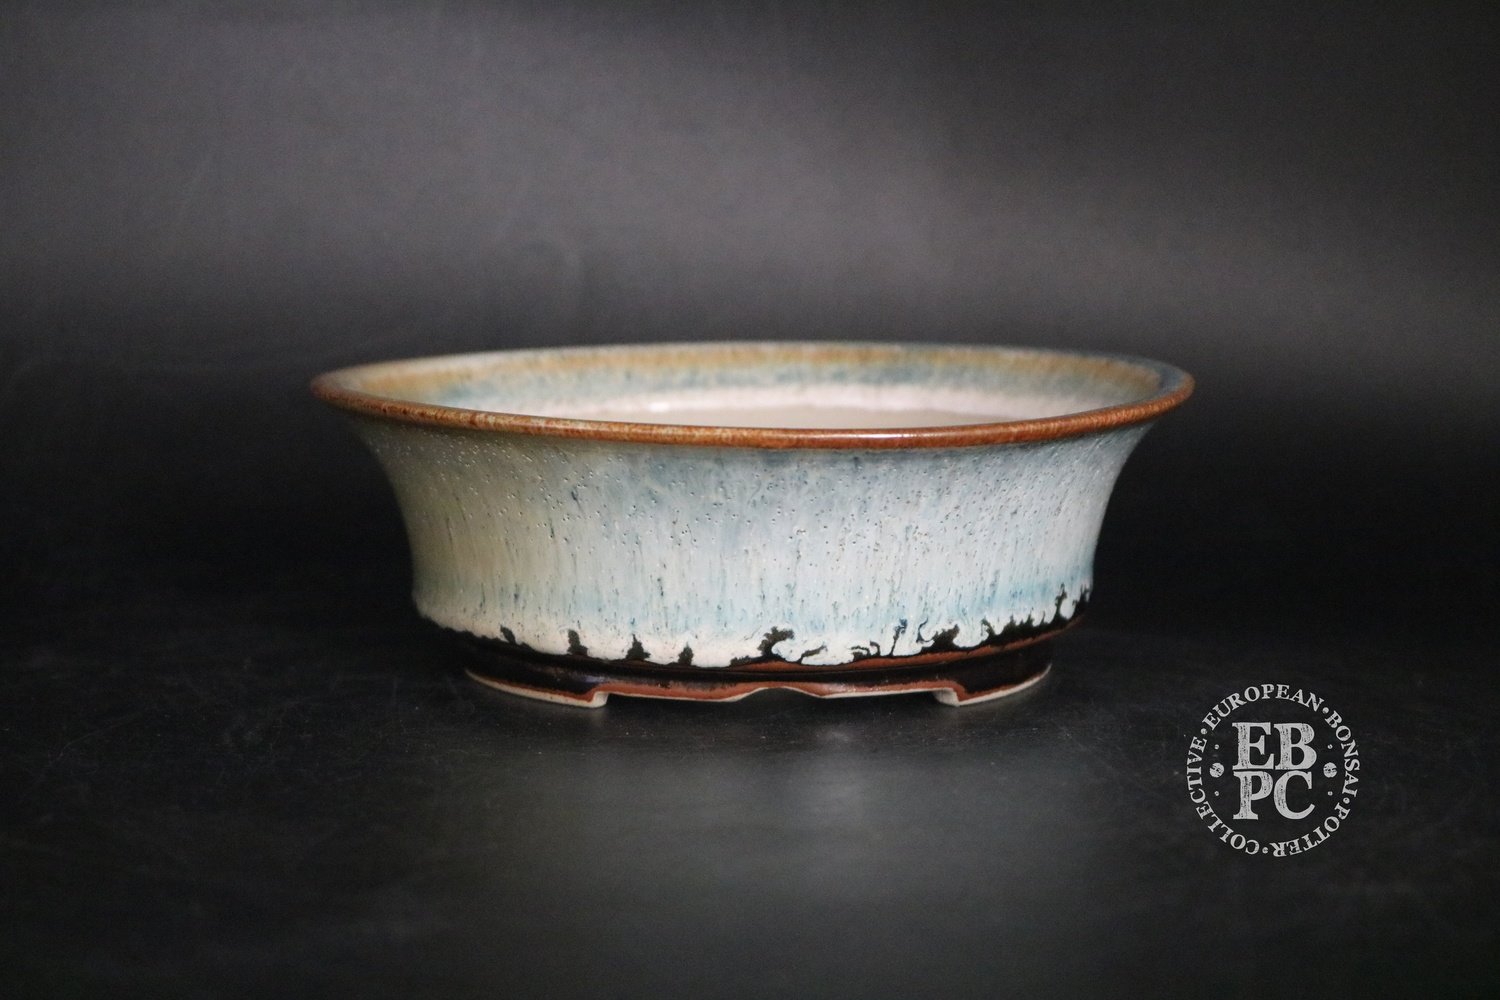 SOLD - Amdouni Bonsai Pots - 16.4cm; Glazed; Round; Semi cascade; Snow and Ice; White, Blue, Brown; Drippy glaze; Sami Amdouni